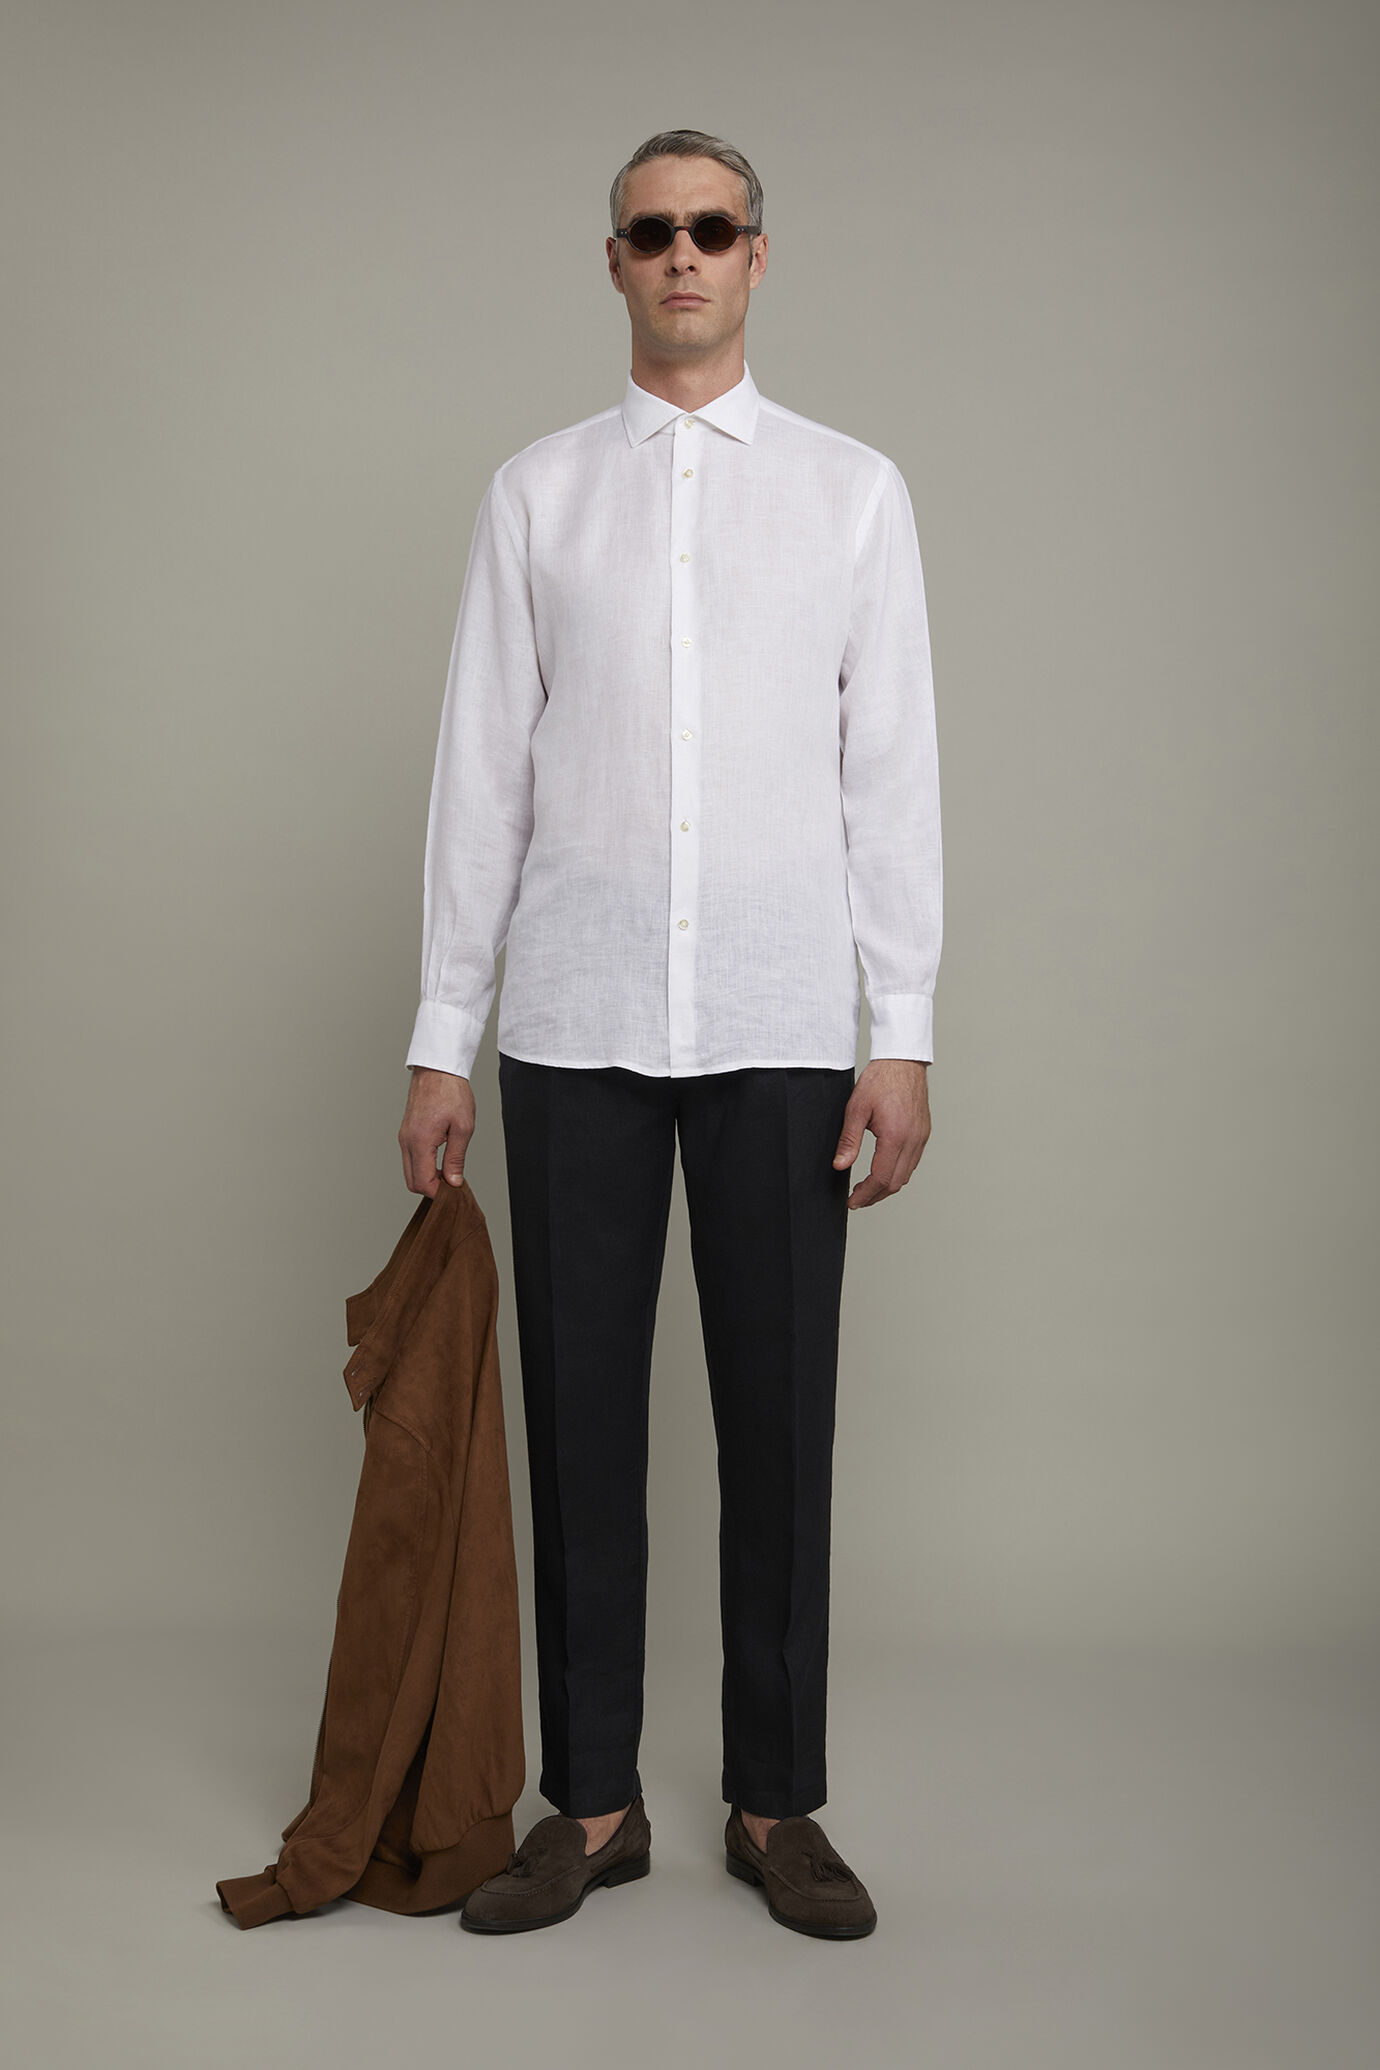 Camicia casual uomo collo classico 100% lino comfort fit